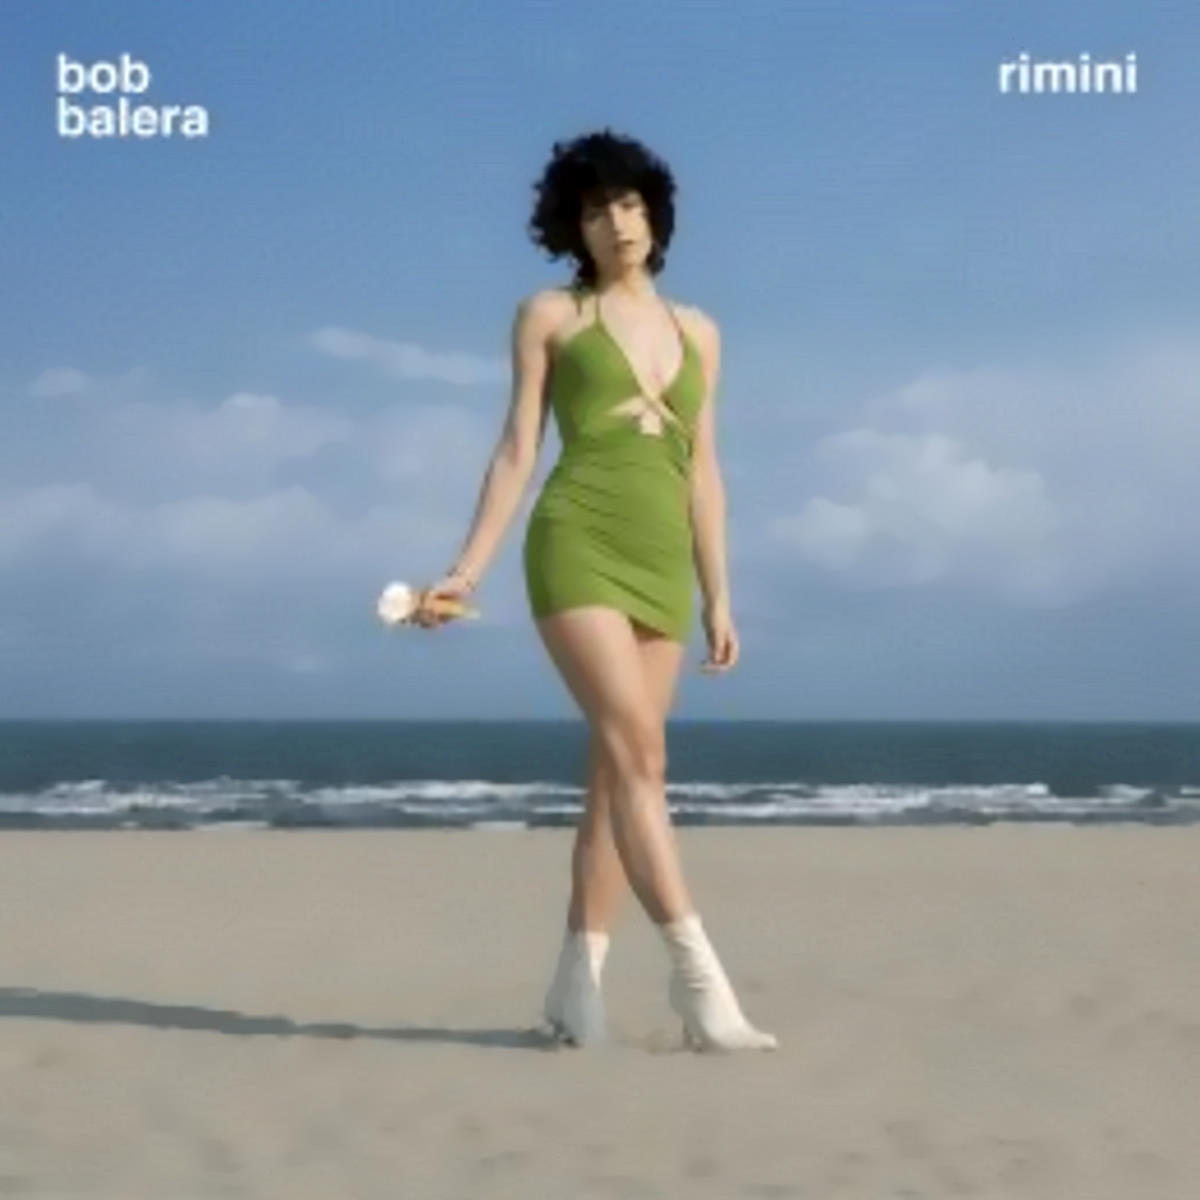 BOB BALERA, “Rimini” è il singolo arricchito da sonorità rock che segna il ritorno del duo veneto e anticipa le novità del nuovo album